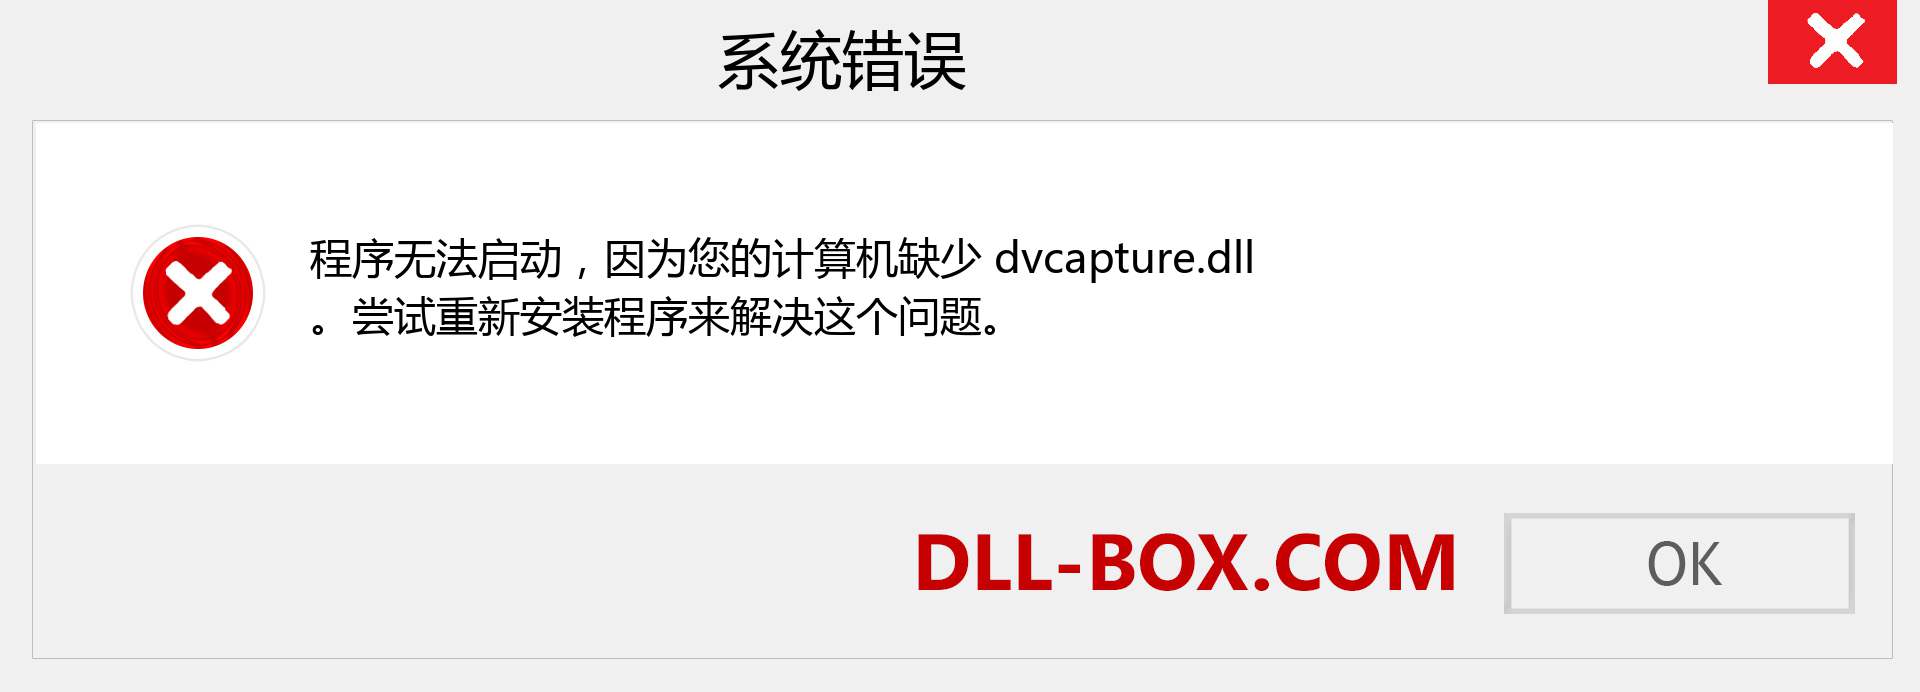 dvcapture.dll 文件丢失？。 适用于 Windows 7、8、10 的下载 - 修复 Windows、照片、图像上的 dvcapture dll 丢失错误